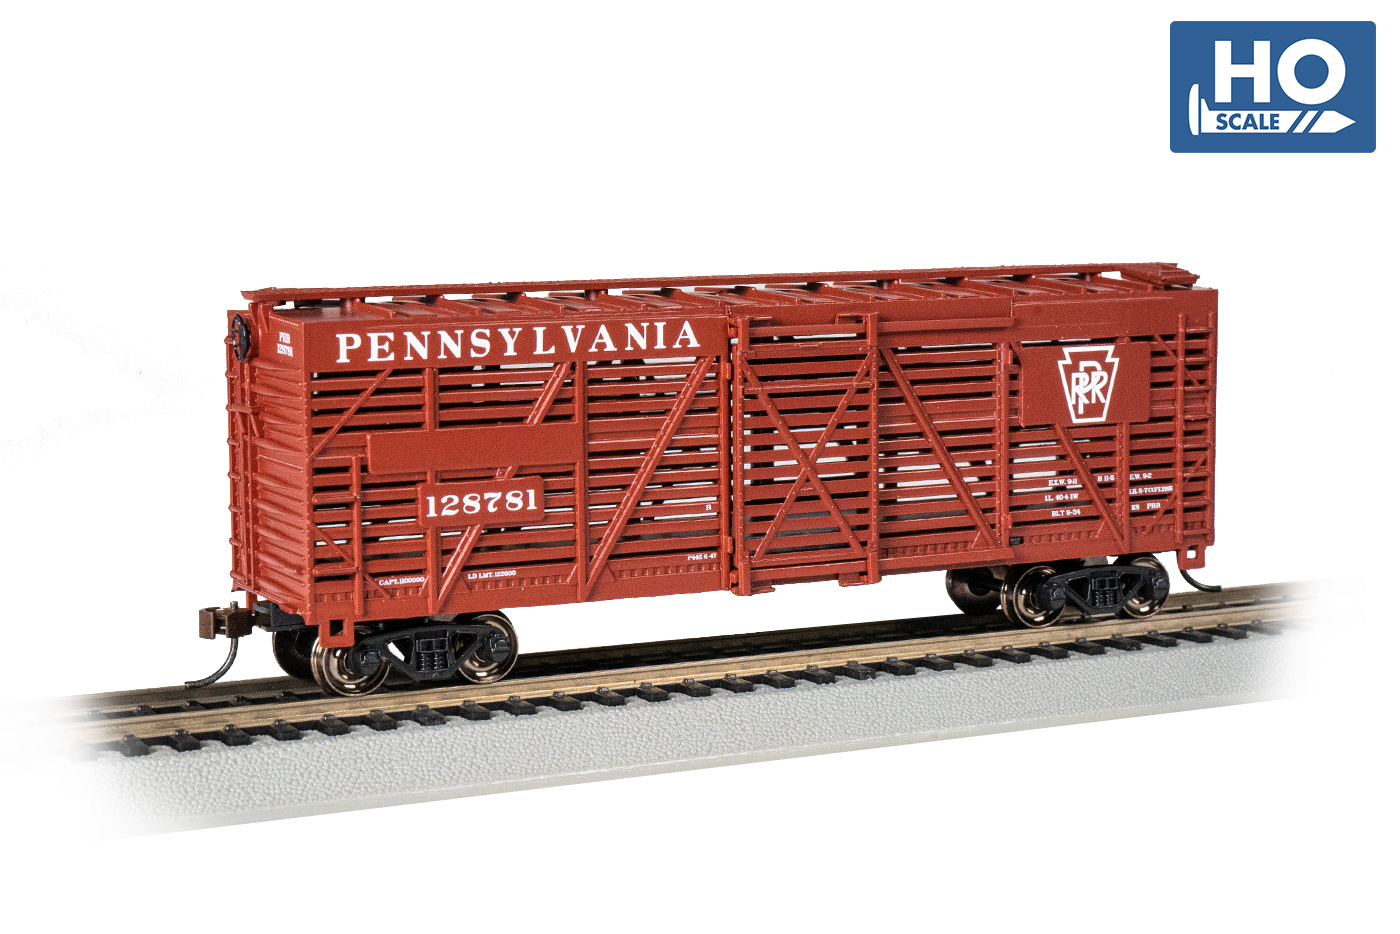 Pennsylvania Railroad #128781 - 40' Stock Car